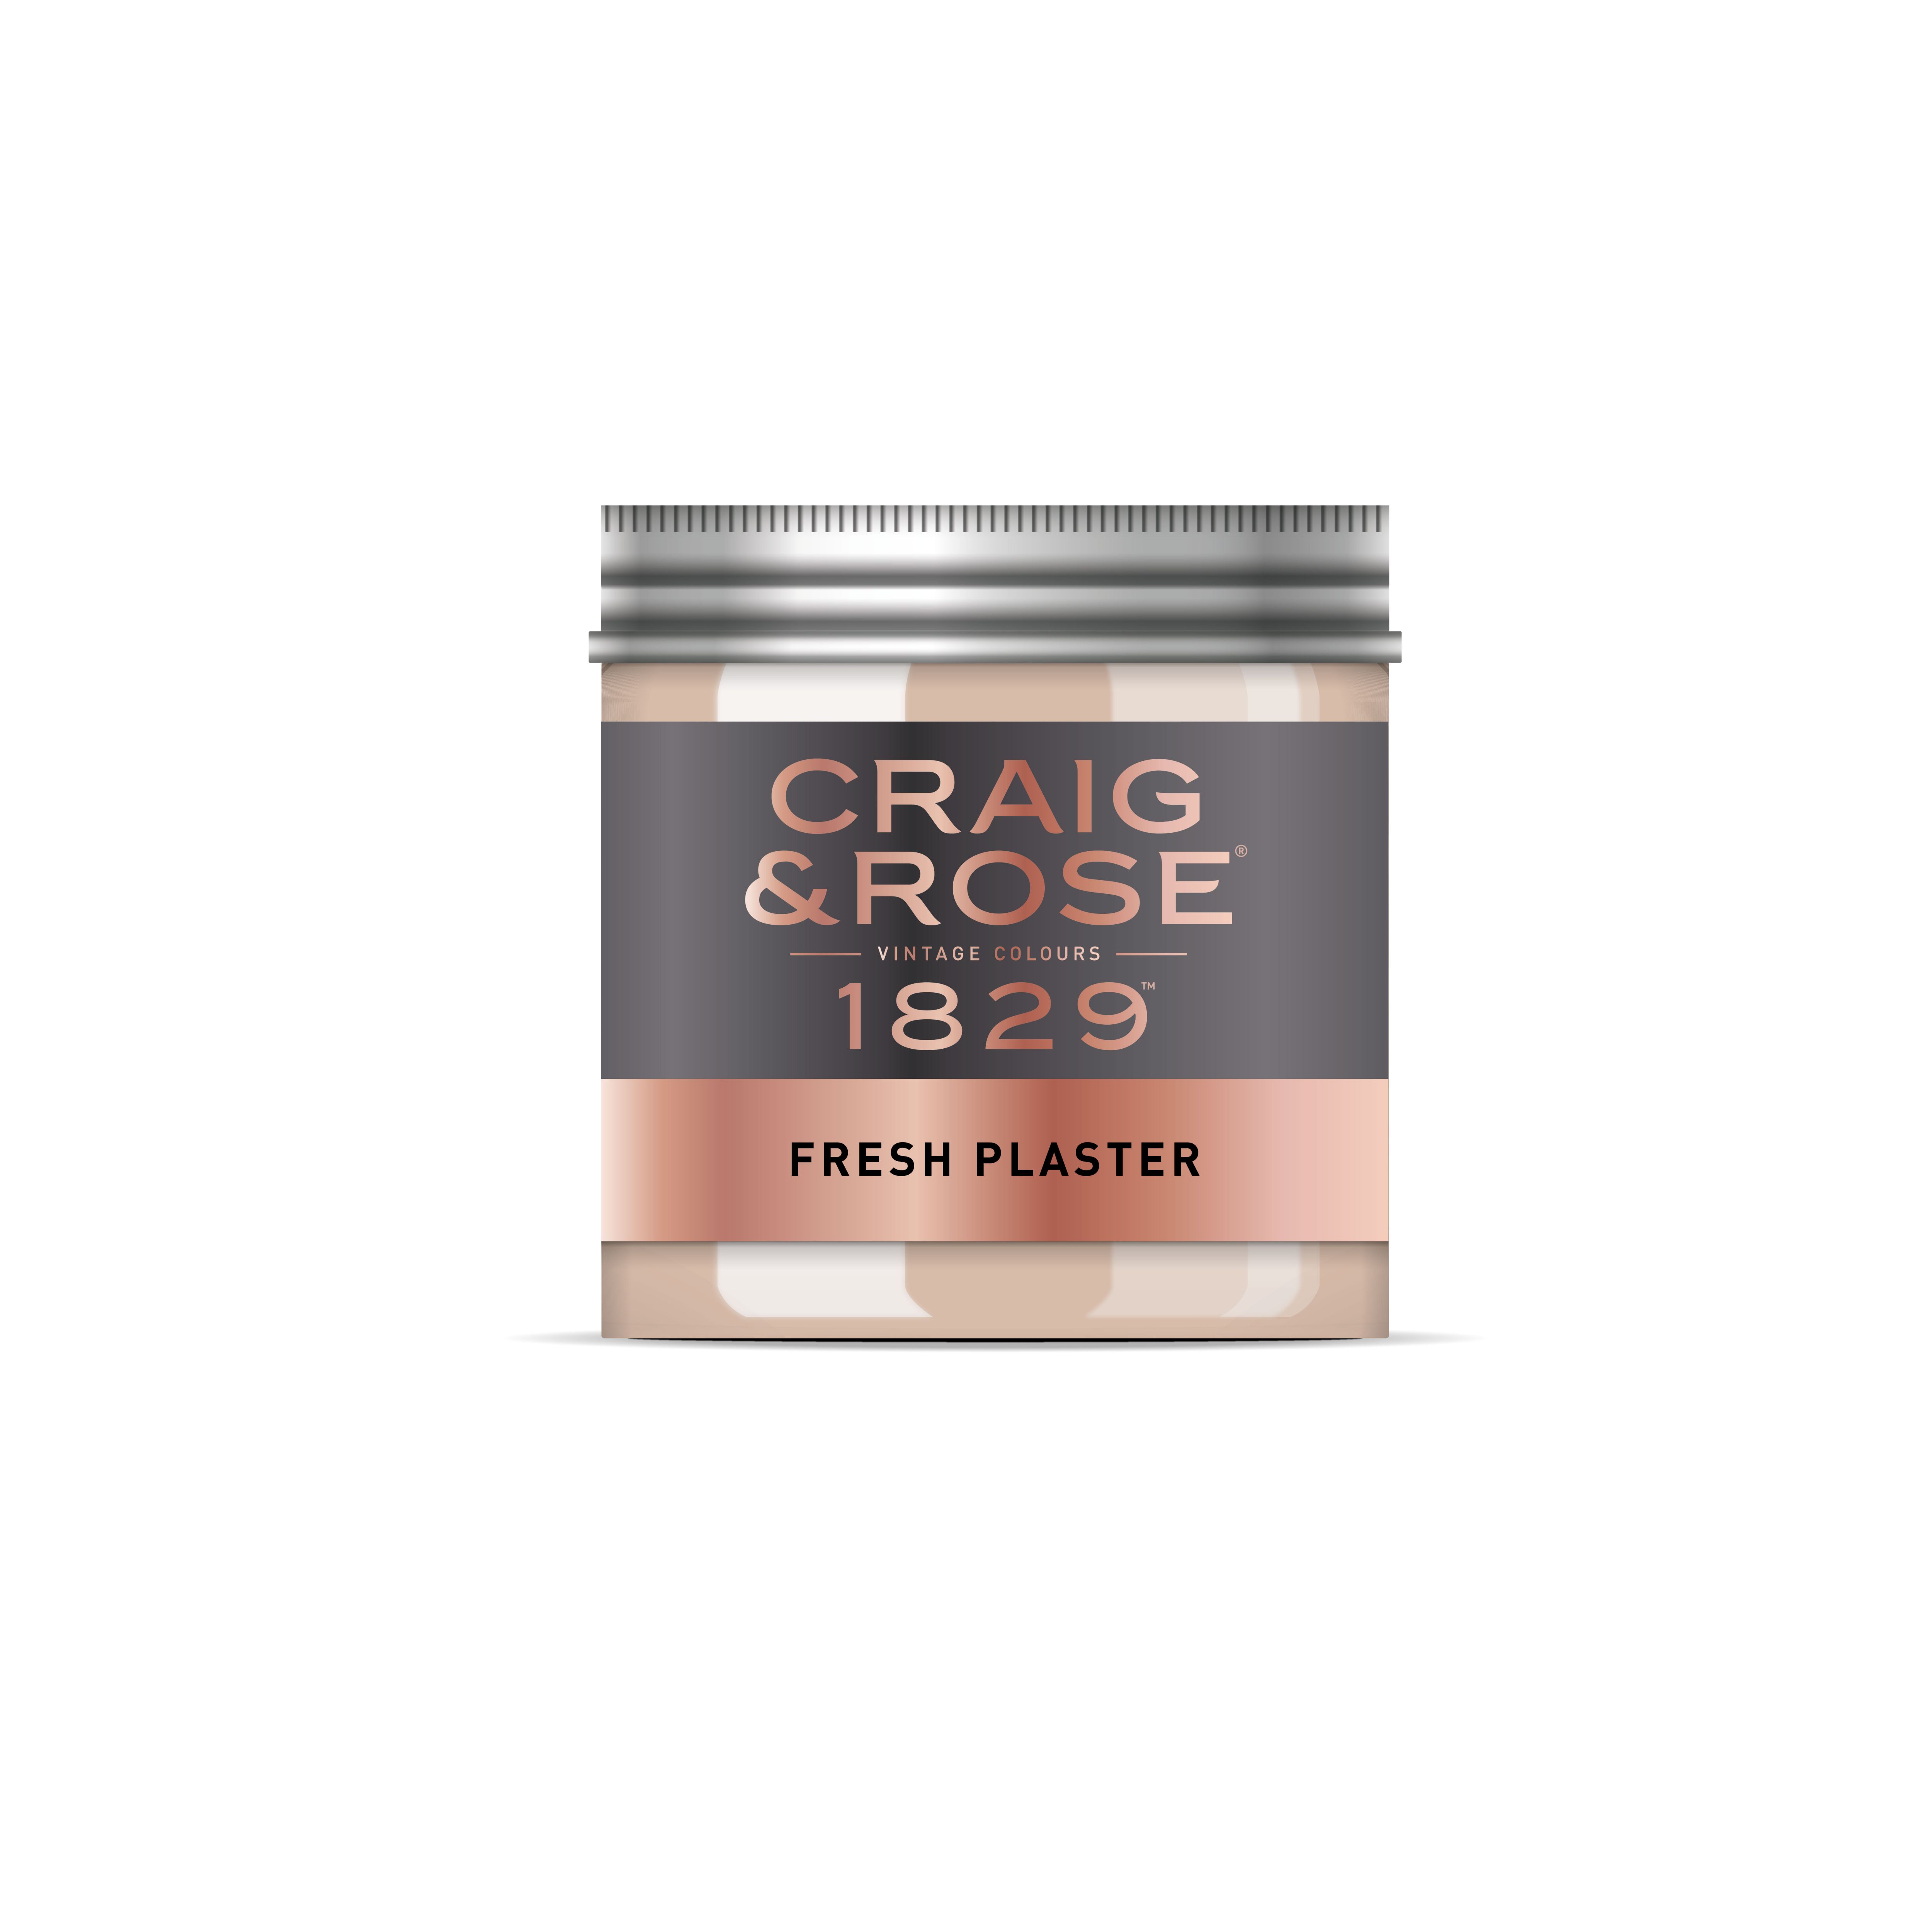 Craig & Rose 1829 Fresh Plaster Chalky Emulsion paint, 50ml